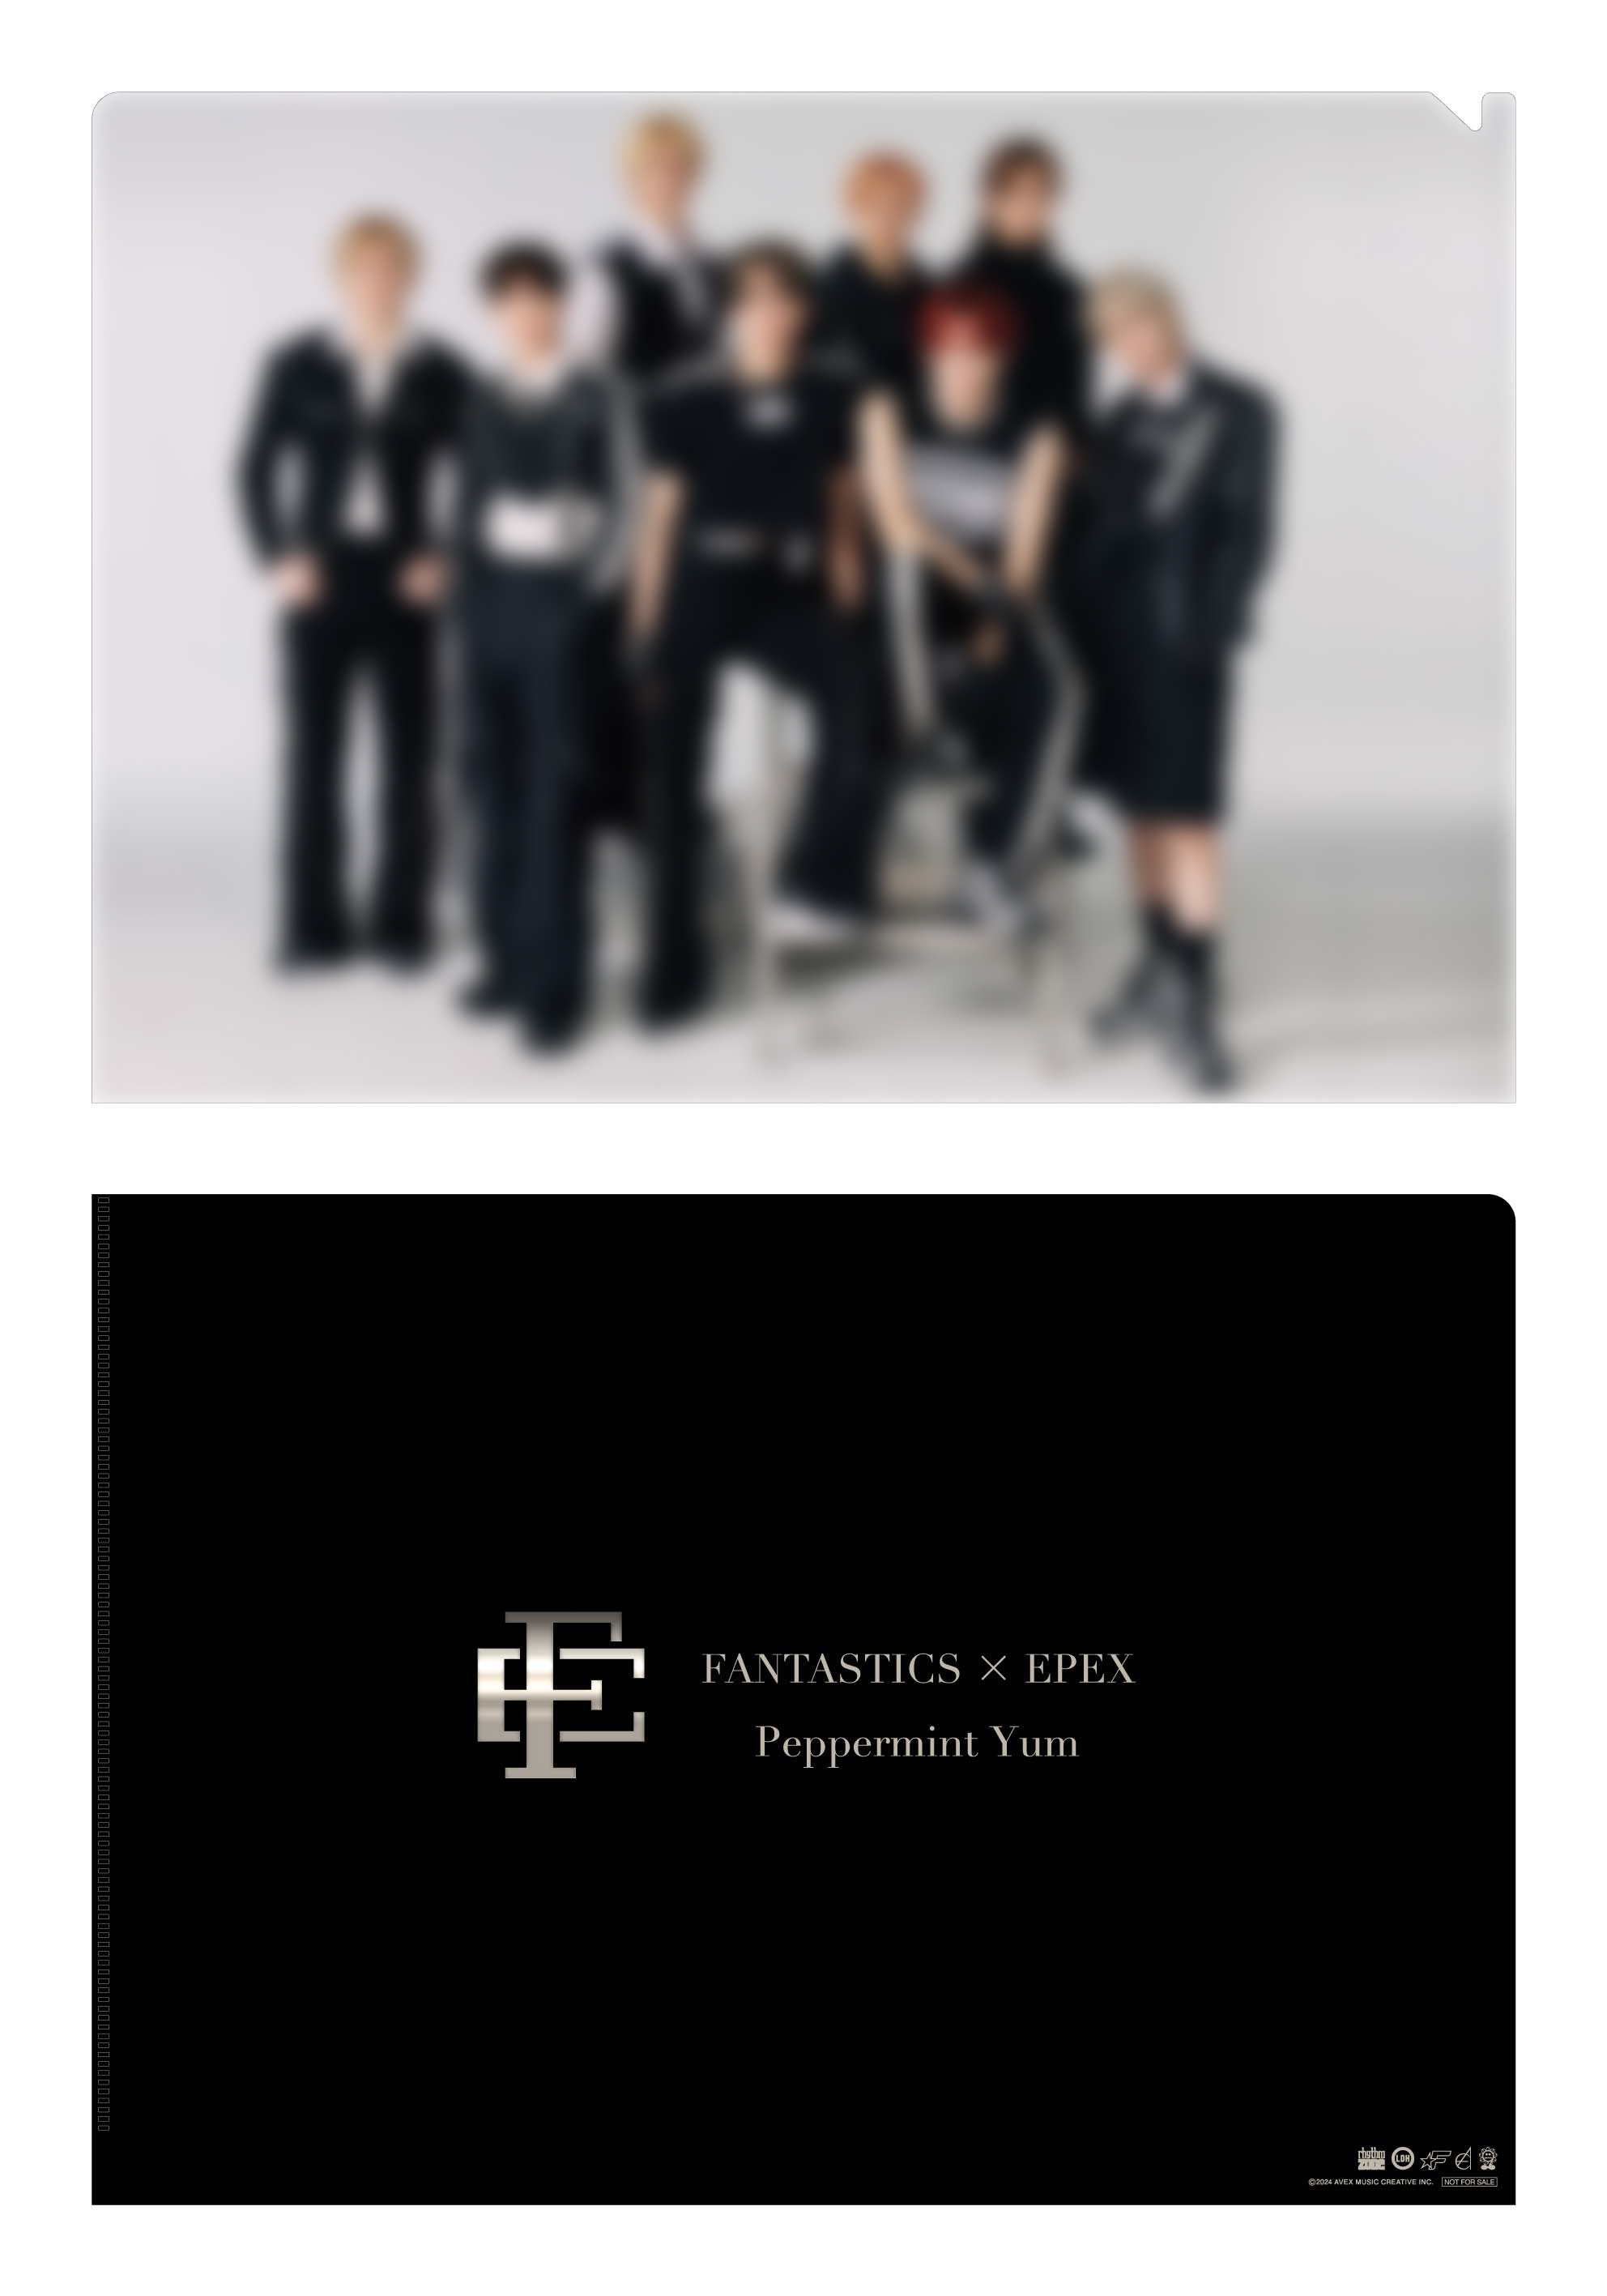 特典デザイン発表!】FANTASTICS × EPEXコラボレーションEP「Peppermint Yum」3/20(水)発売! - EPEX  JAPAN OFFICIAL FANCLUB 【ZENITH JAPAN】